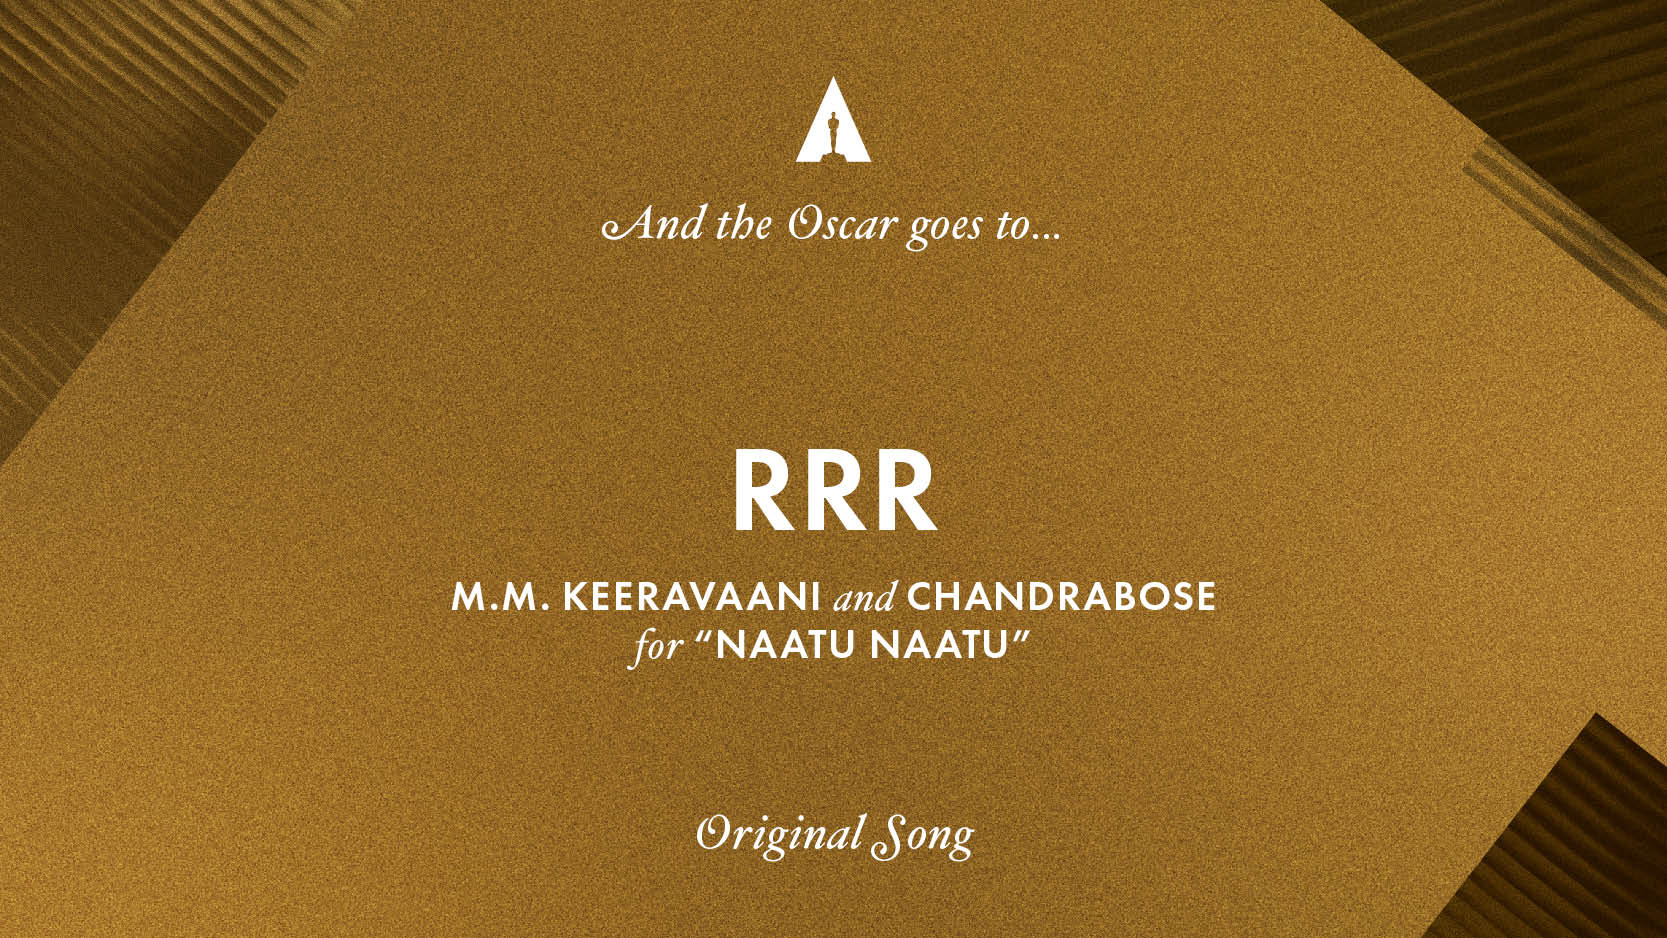 Best song for Oscar Award Nattu Nattu from RRR movie